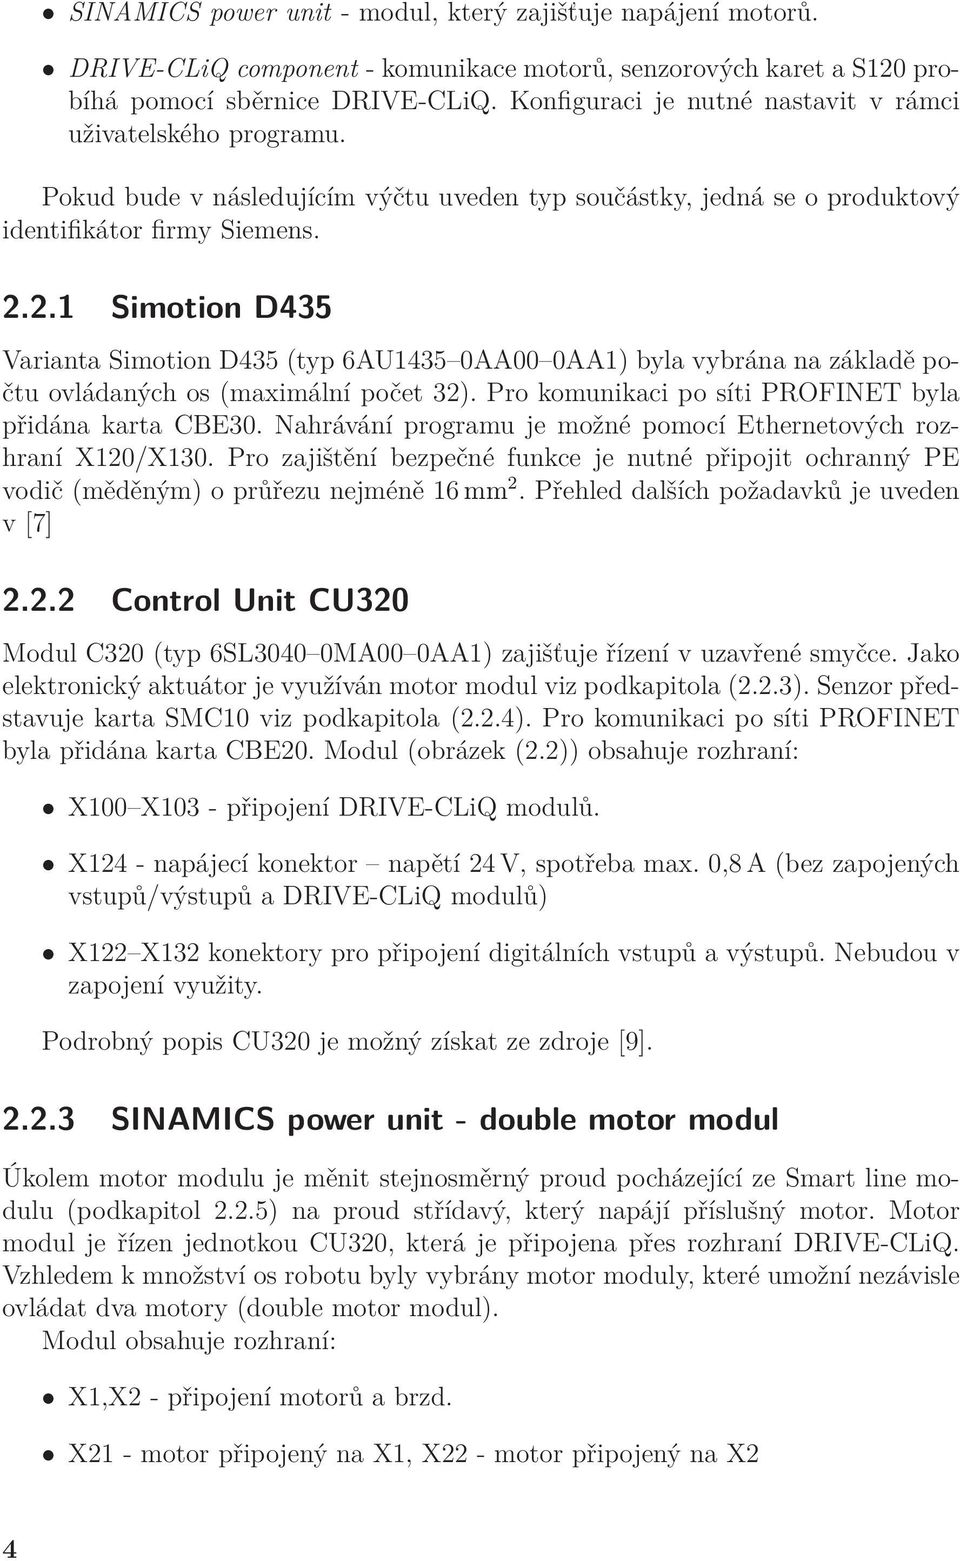 2.1 Simotion D435 Varianta Simotion D435 (typ 6AU1435 0AA00 0AA1) byla vybrána na základě počtu ovládaných os (maximální počet 32). Pro komunikaci po síti PROFINET byla přidána karta CBE30.